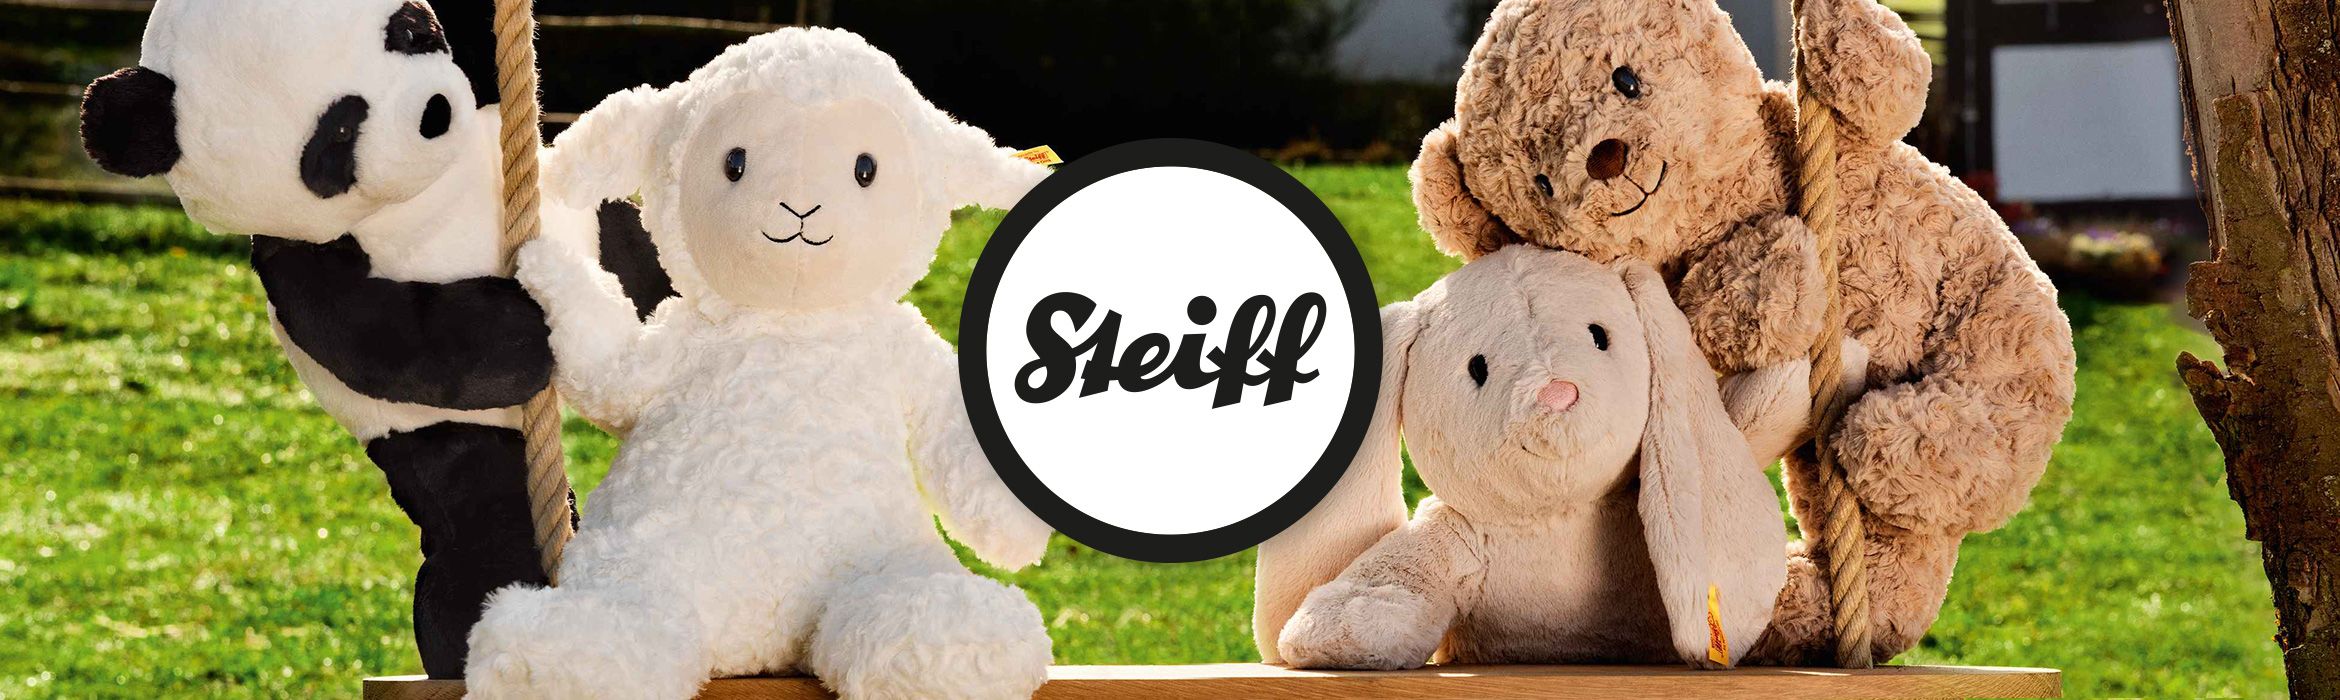 STEIFF Kuscheltiere & Teddybären